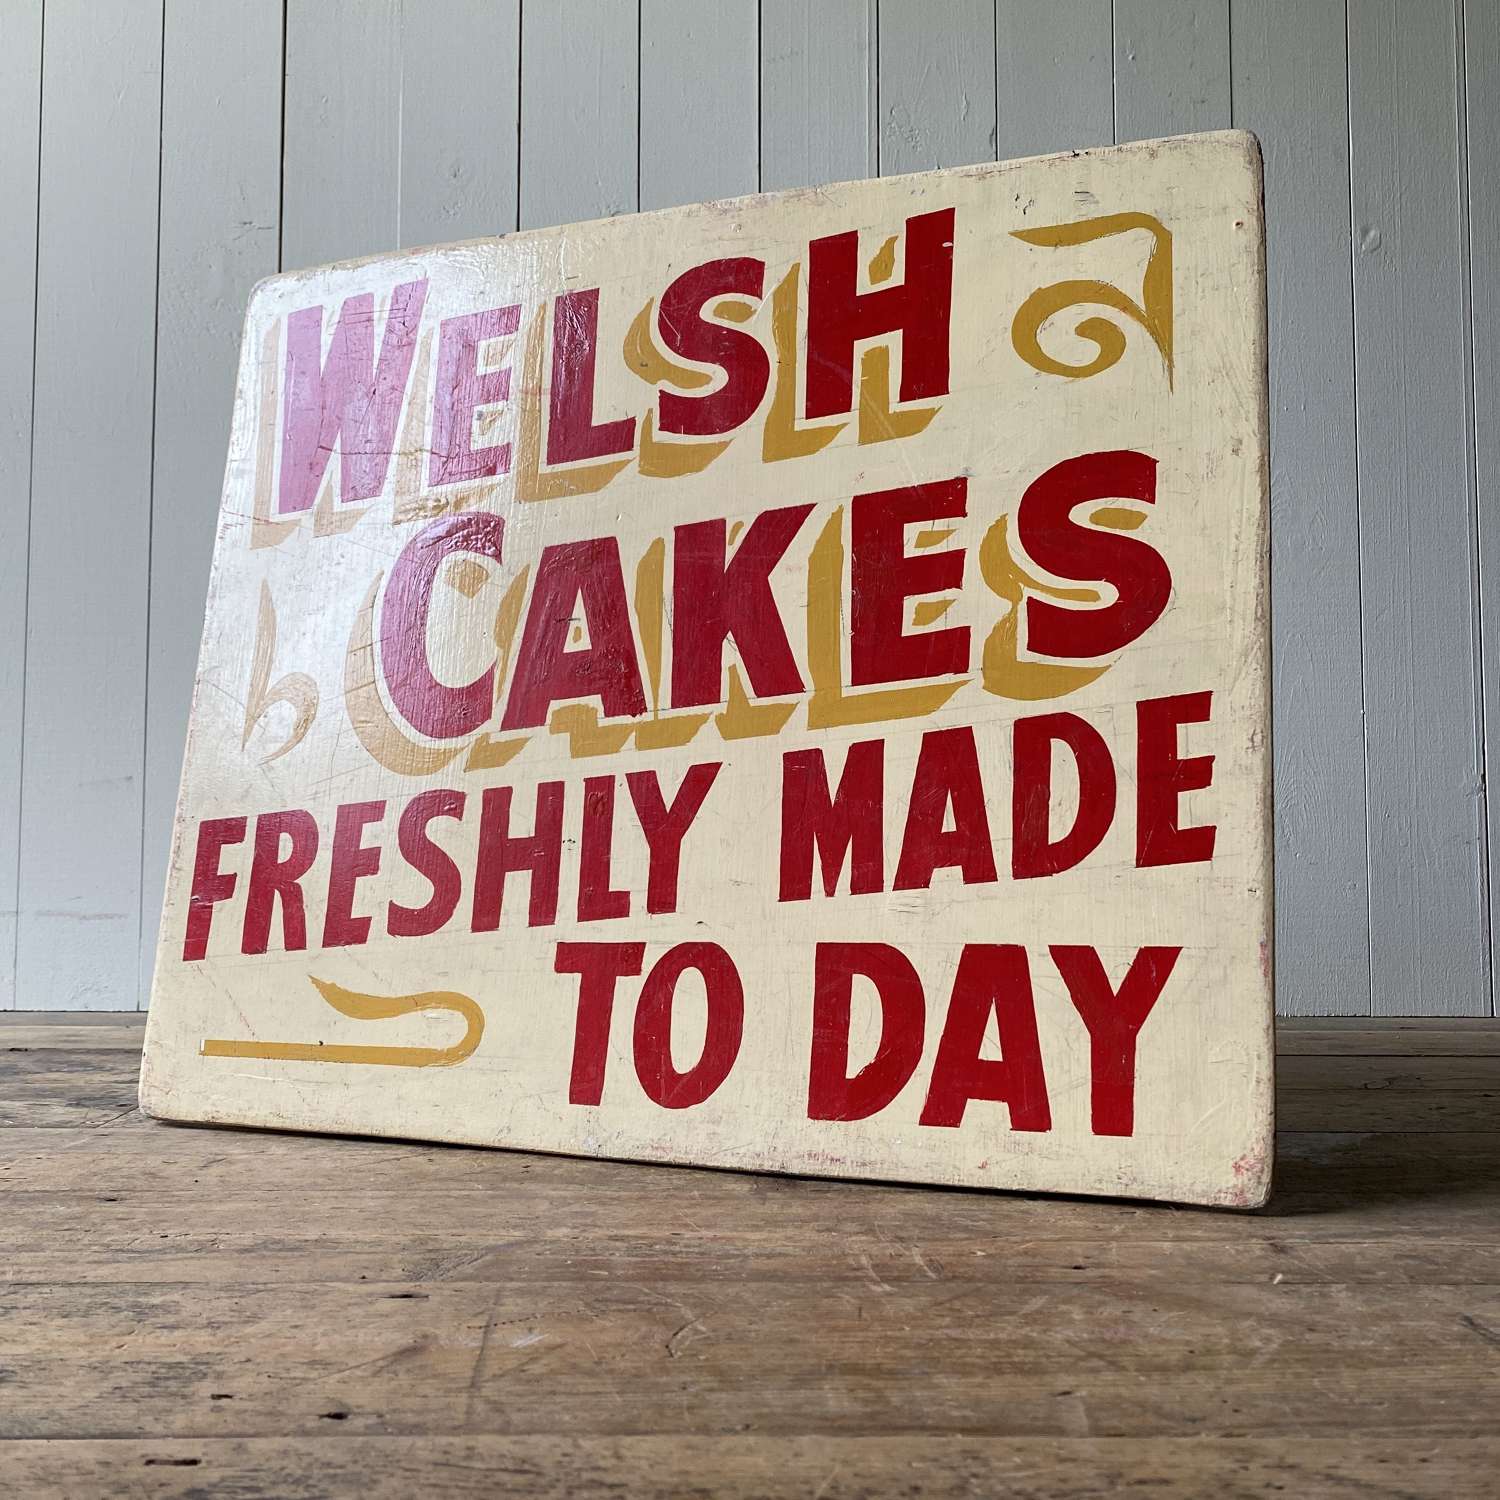 Vintage Welsh Cakes Sign